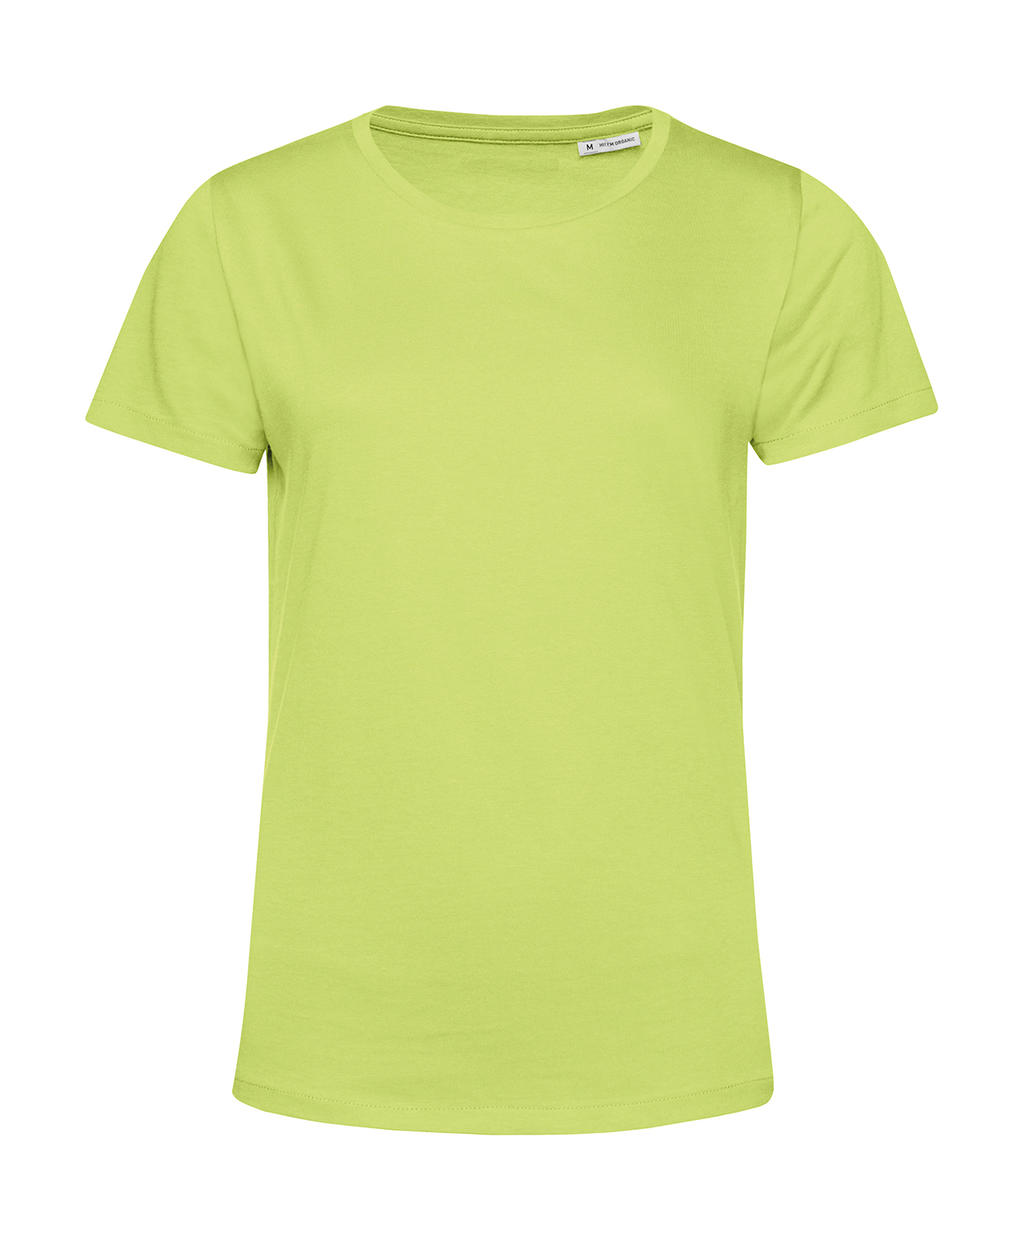 Tričko dámské BC Organic Inspire E150 - světle zelené, XXL